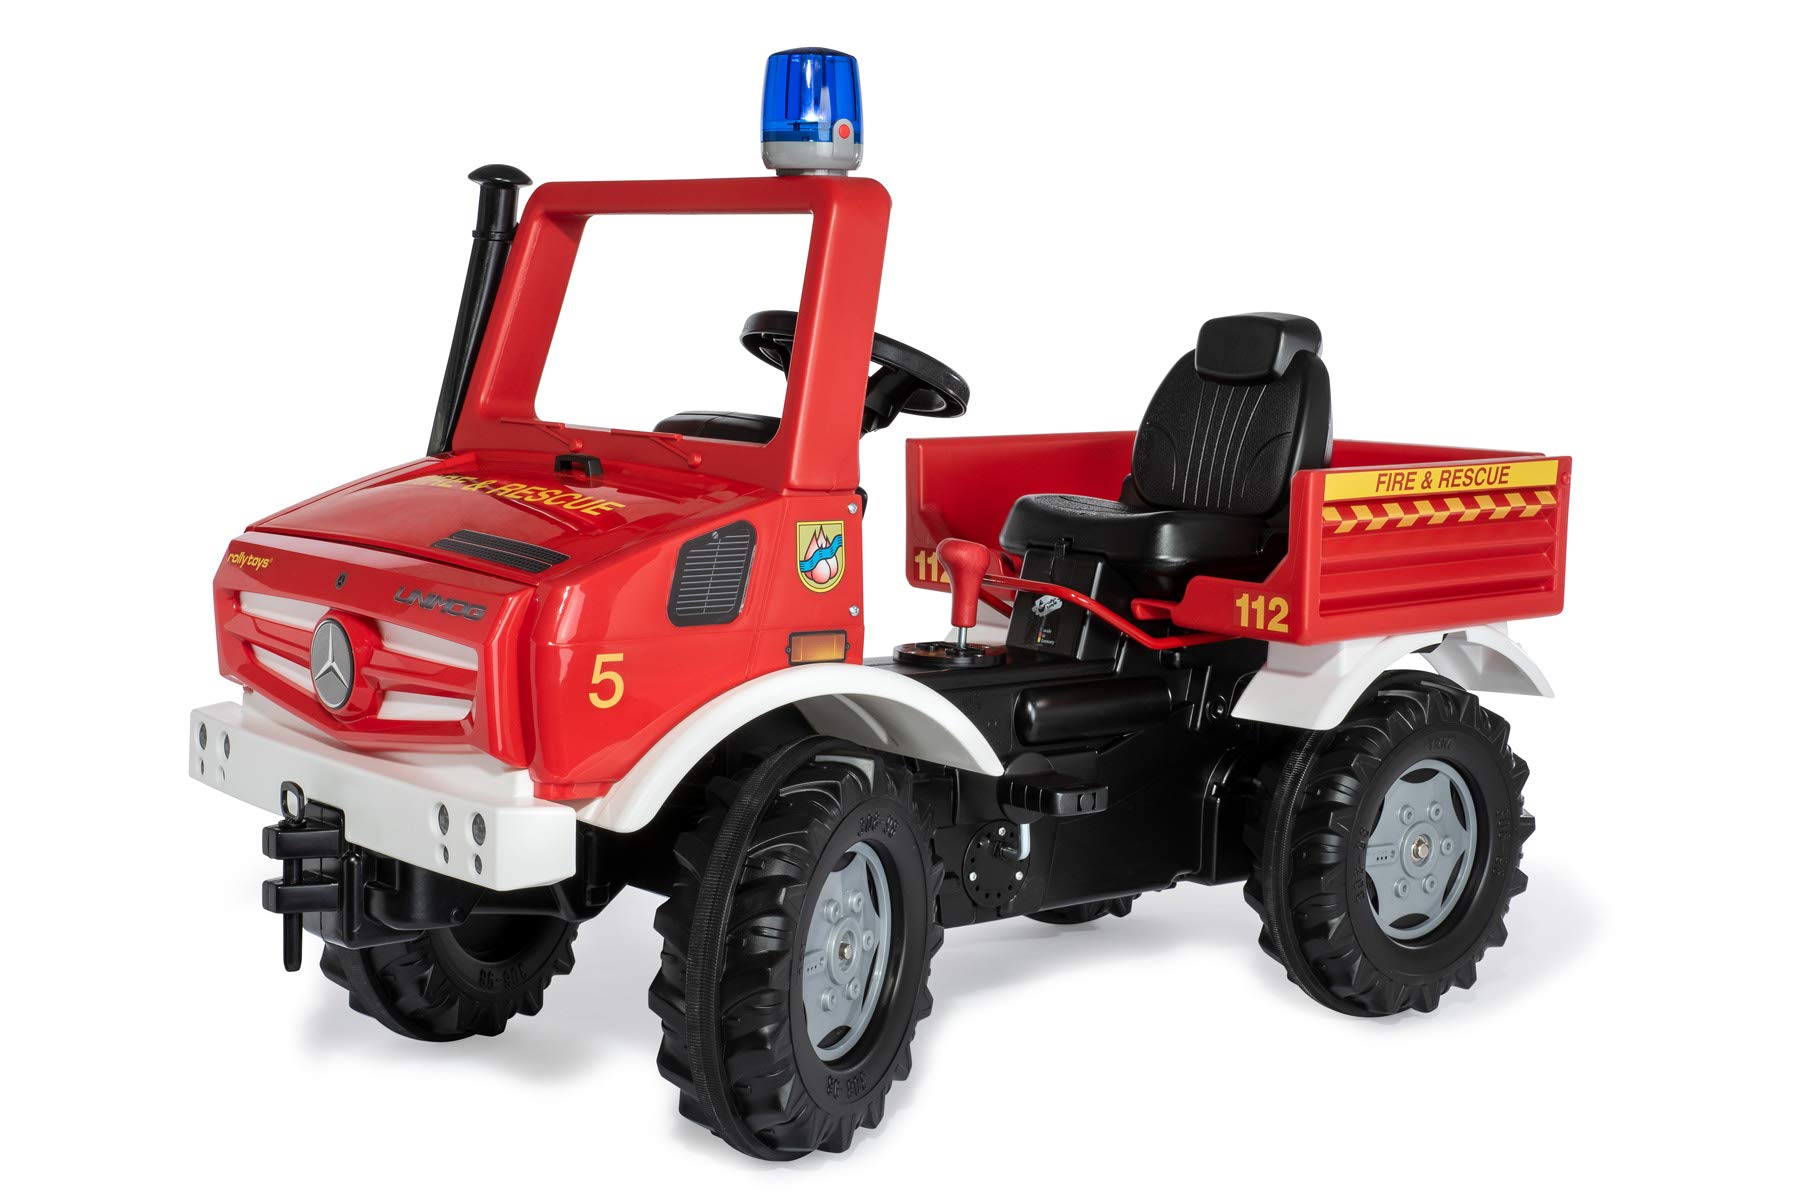 Rolly Toys Unimog Feuerwehr Tretauto (ab 3 Jahren, Feuerwehrauto zum selber fahren mit Flüsterlaufreifen, Schaltung, Handbremse, Tretfahrzeug für Kinder, Feuerwehr Unimog) 038220